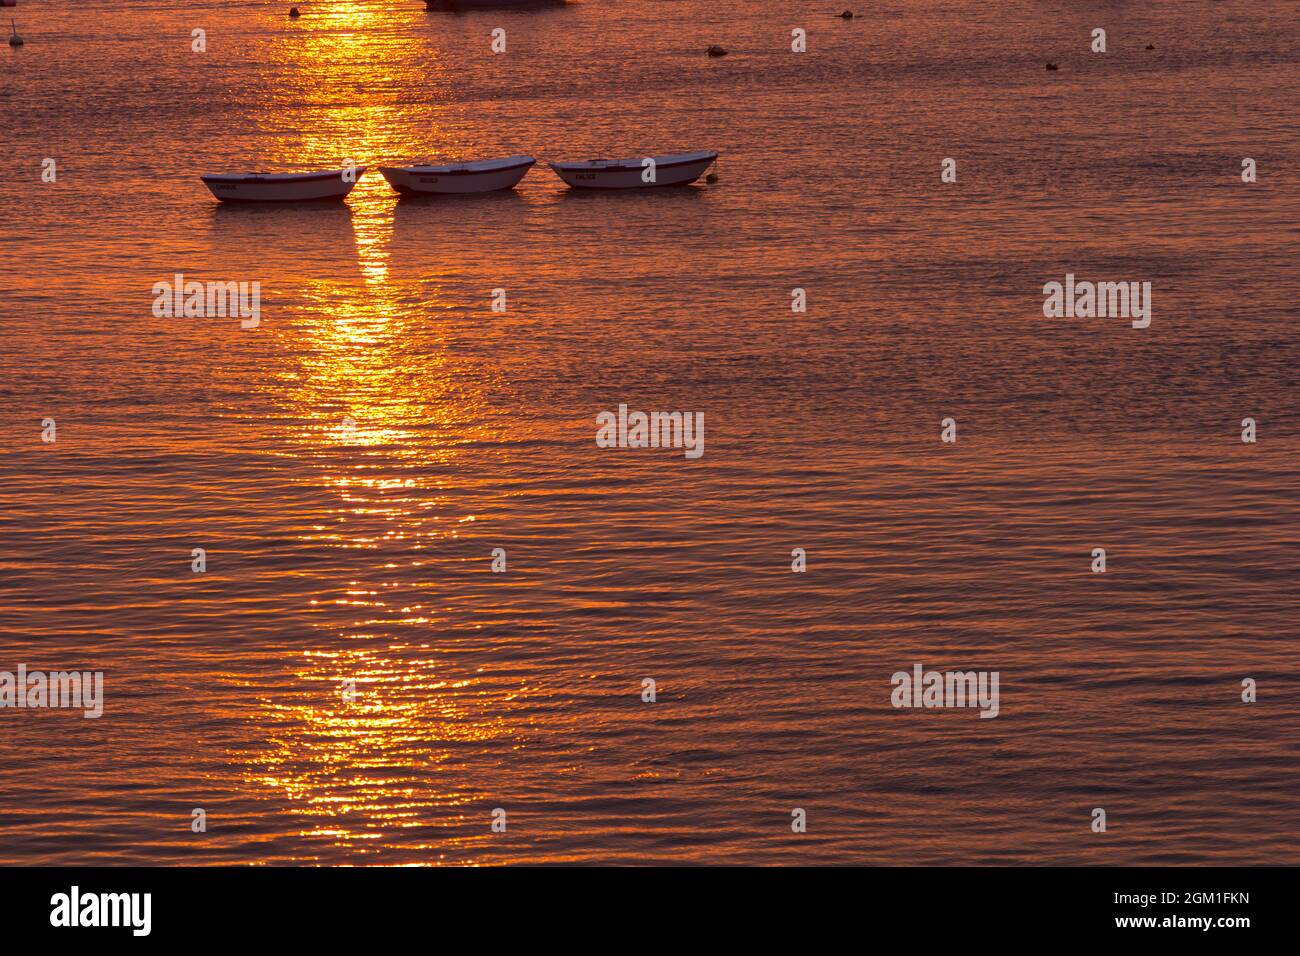 Tramonto rossastro sul mare calmo e calmo con barche da pesca in controluce. Silhouette di piccole barche al tramonto. Foto Stock